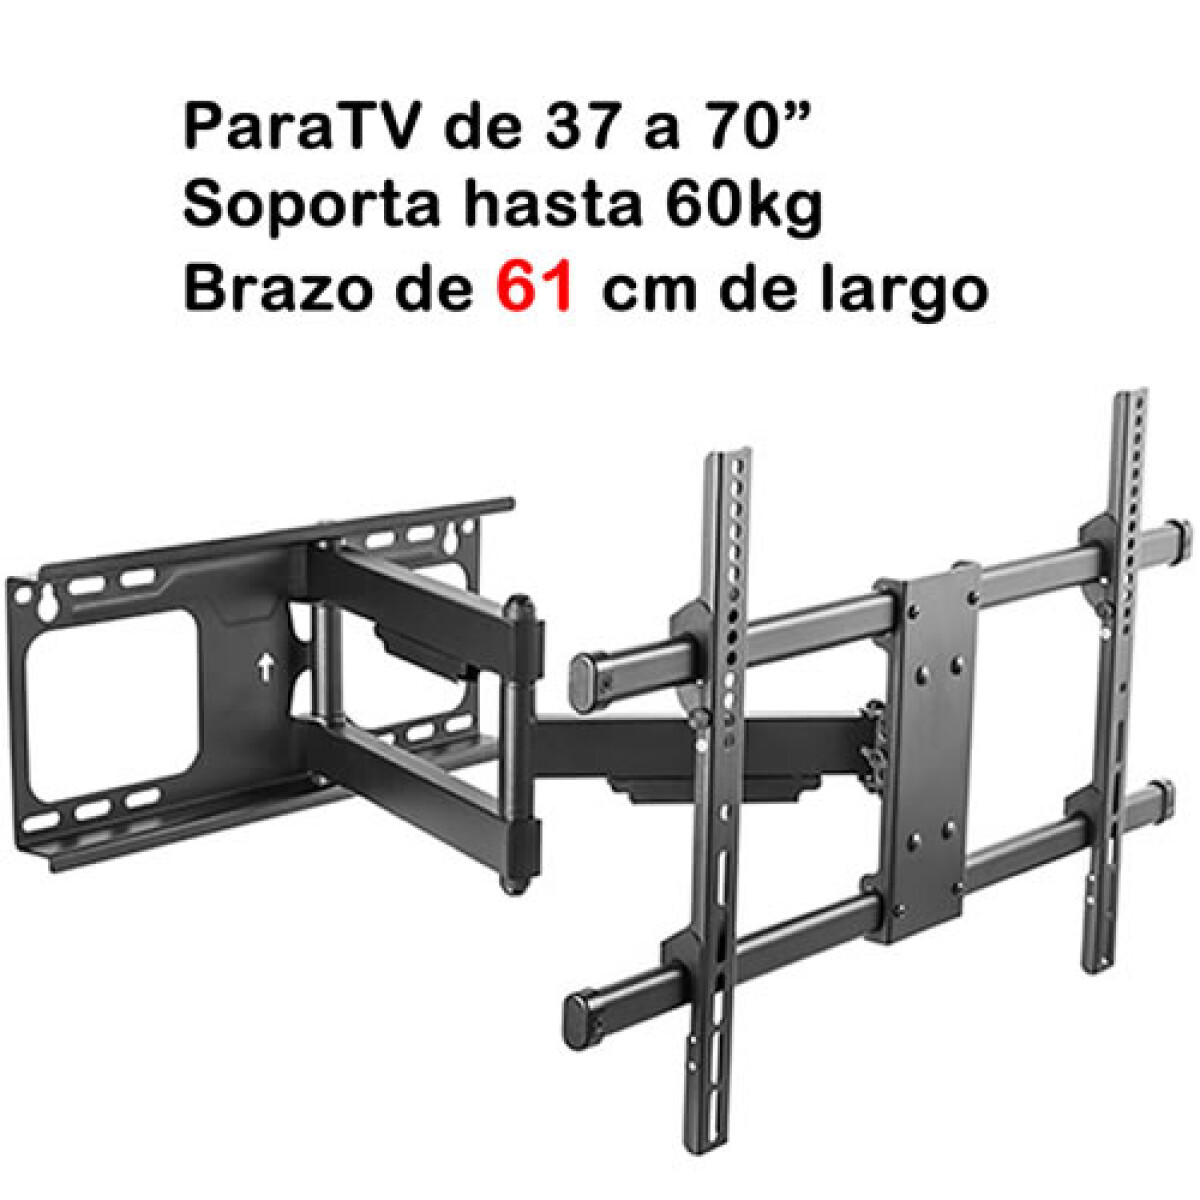 Soporte de TV de 37 a 70" con brazo móvil extra largo de 61 cm 